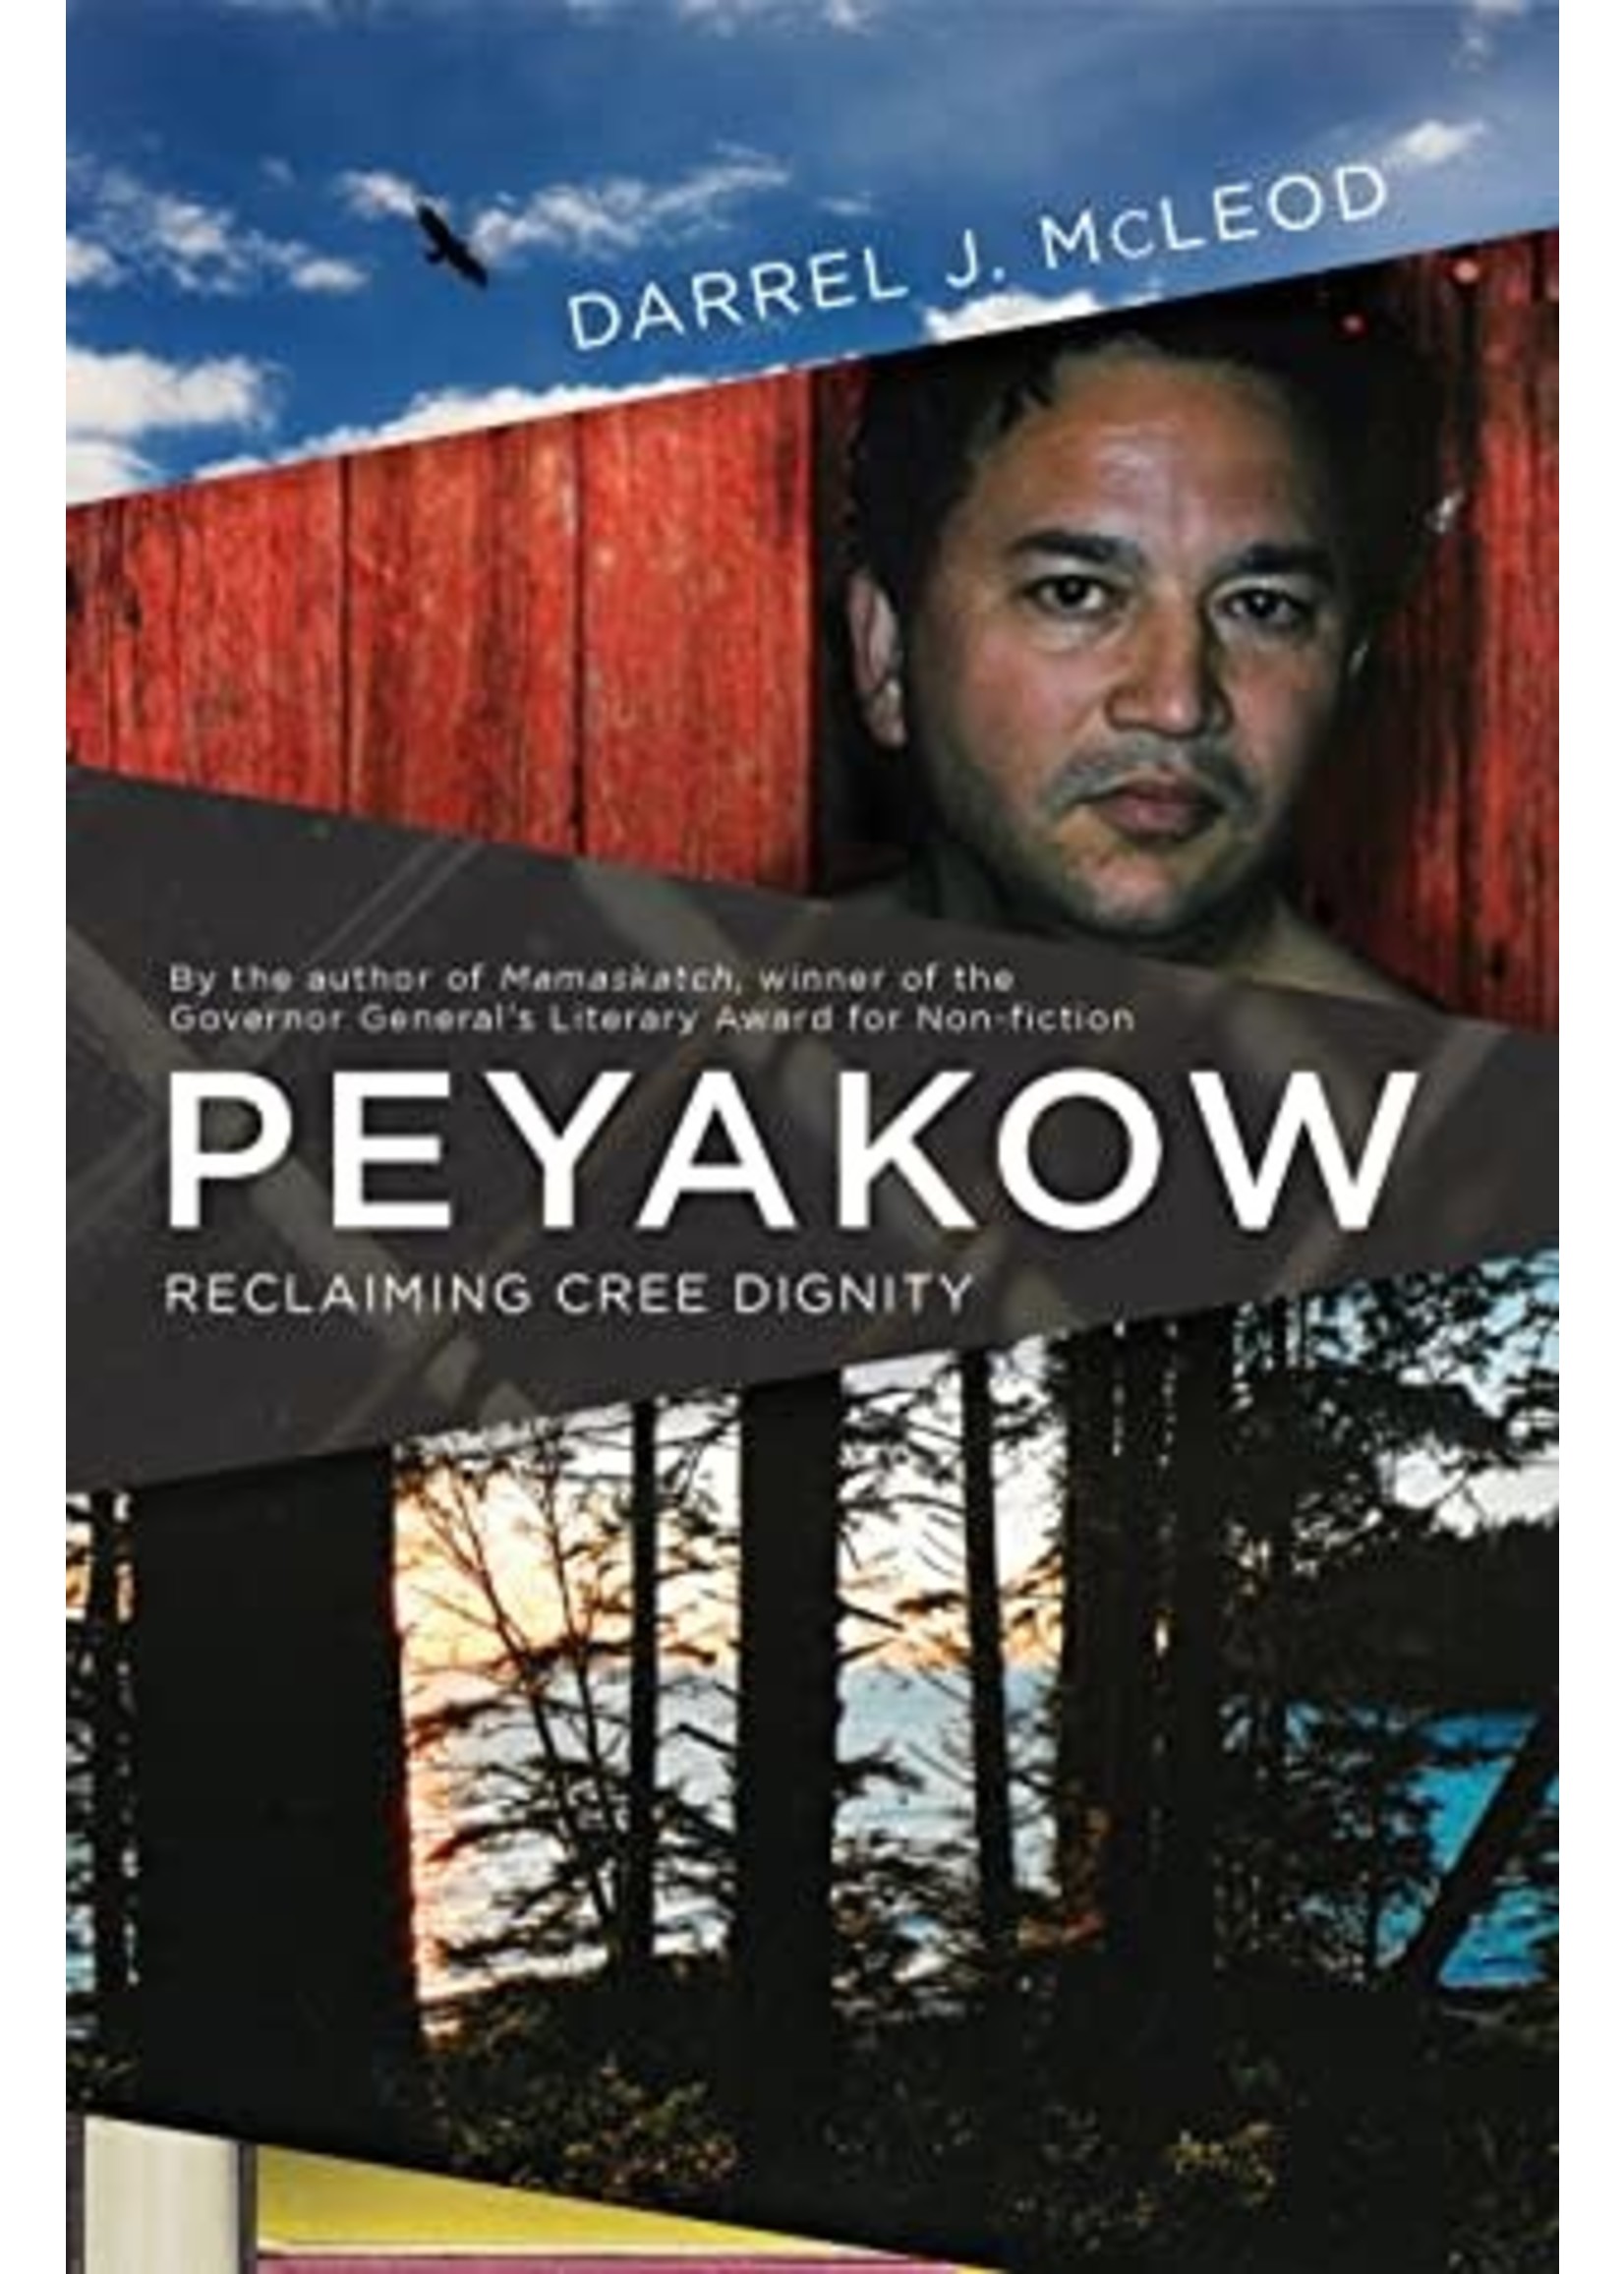 Peyakow: Reclaiming Cree Dignity, A Memoir by Darrel J. McLeod